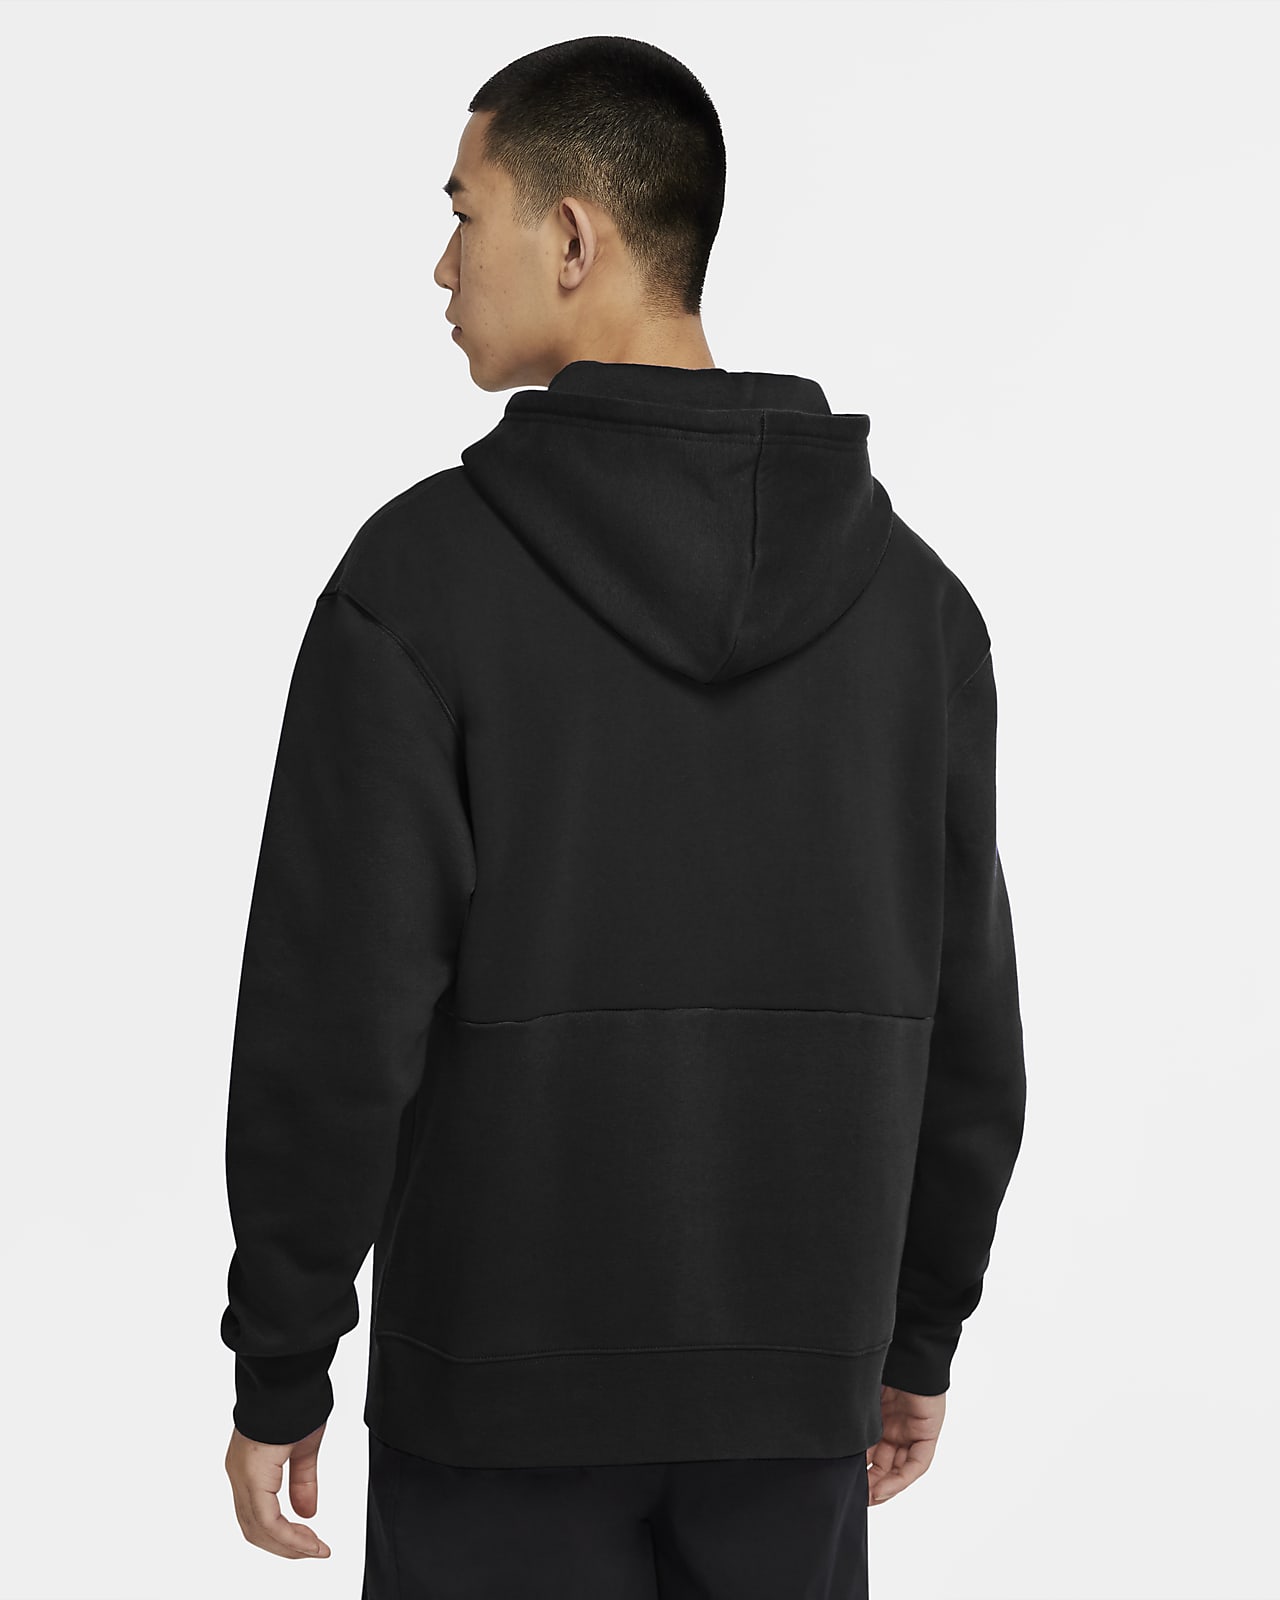 men's fleece pullover hoodie jordan jumpman